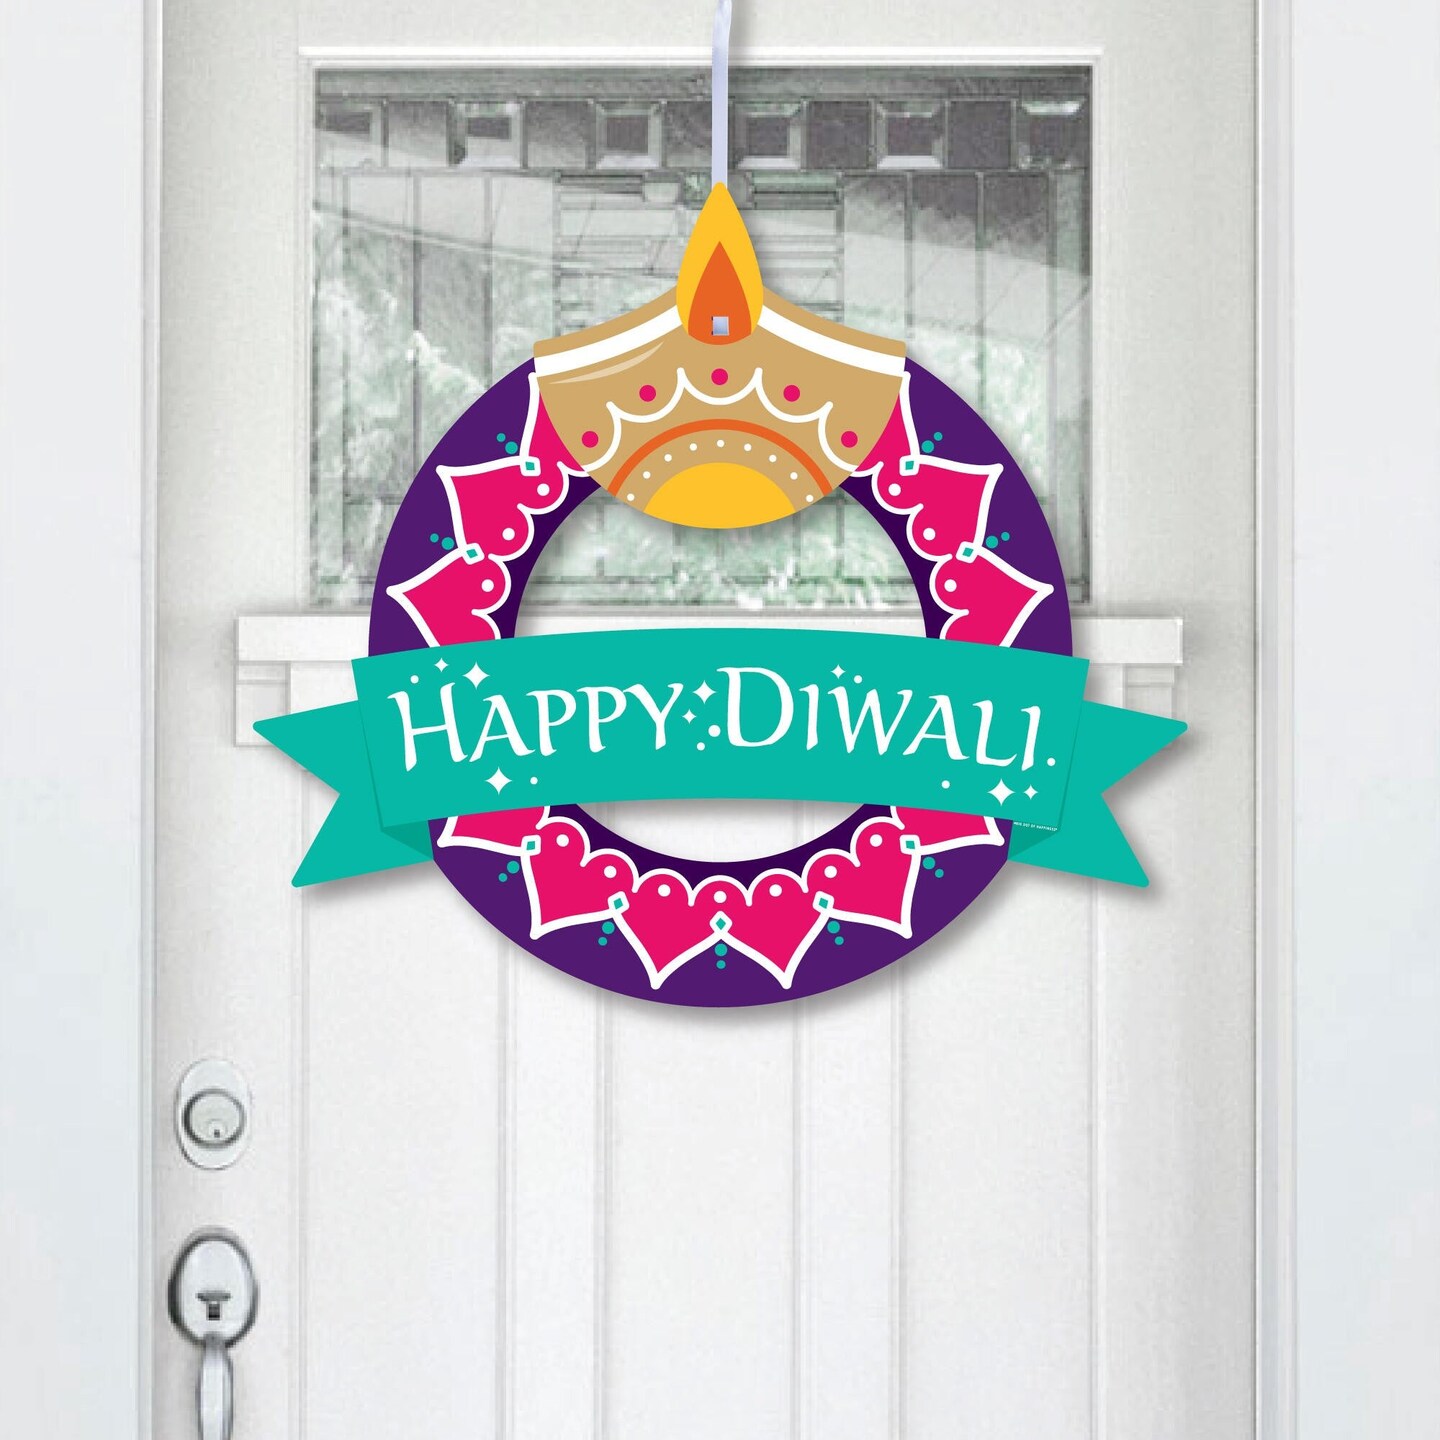 Big Dot of Happiness Happy Diwali - Outdoor Festival of Lights Party Decor - Front Door Wreath